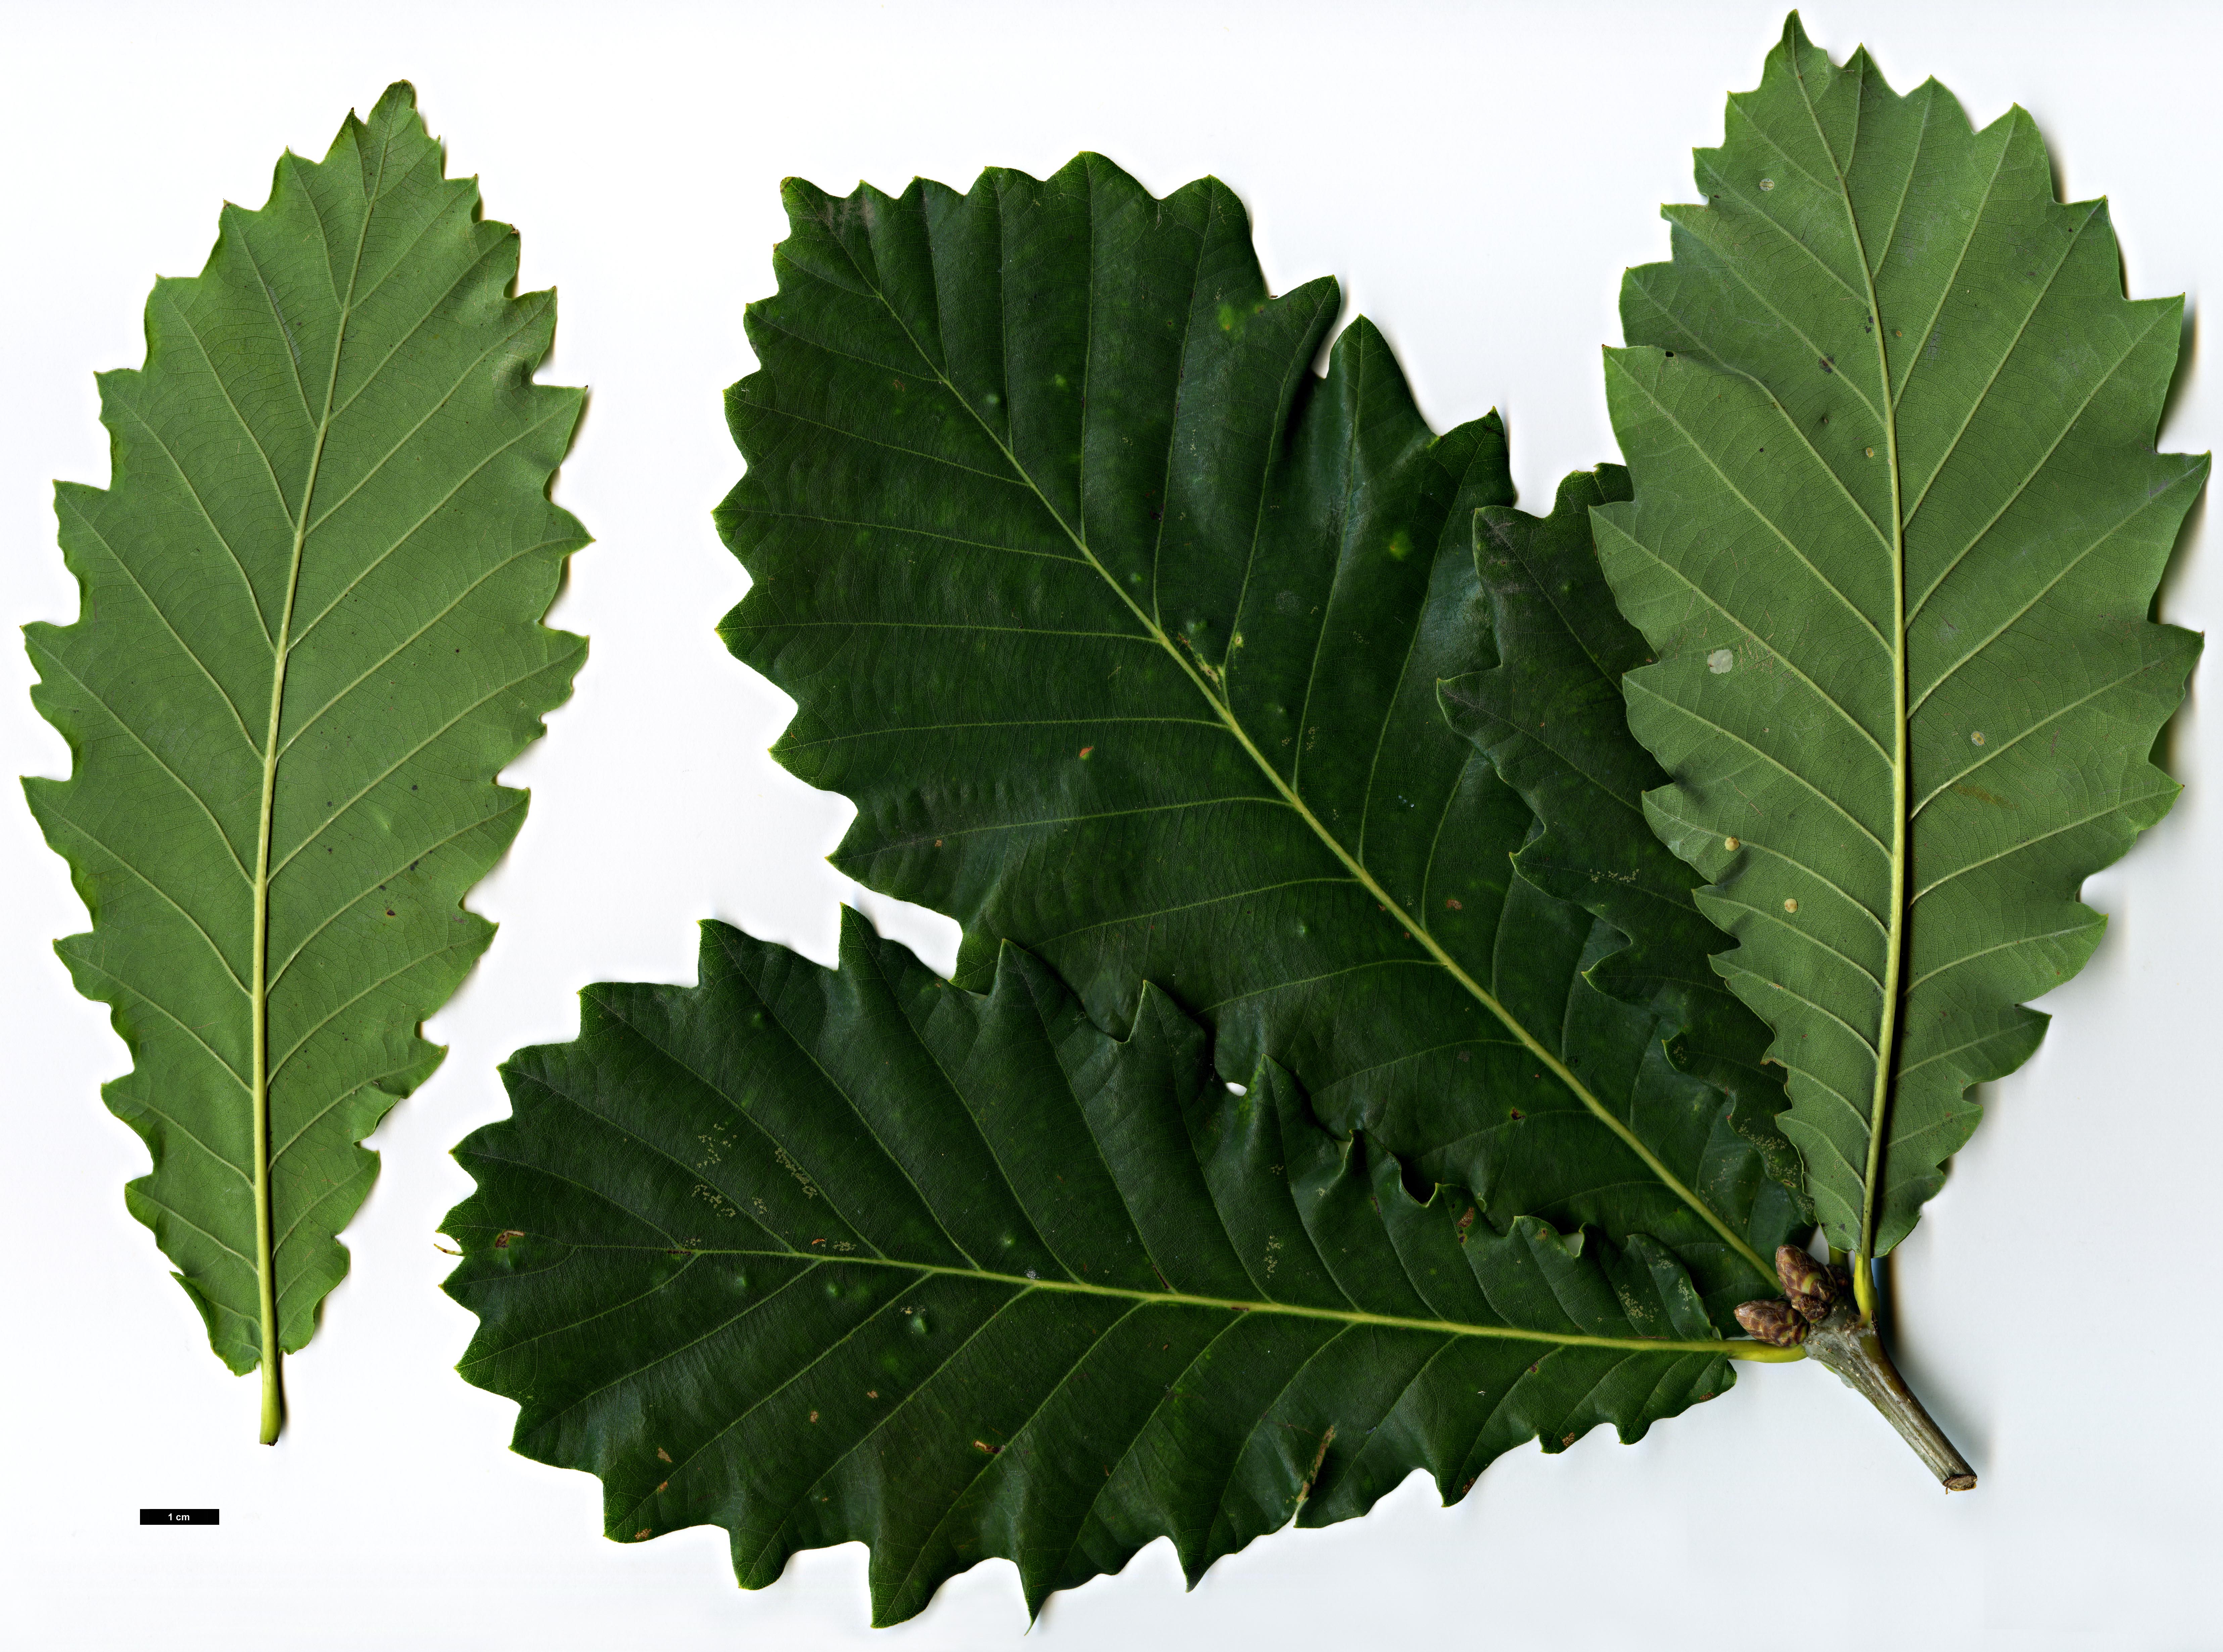 High resolution image: Family: Fagaceae - Genus: Quercus - Taxon: ×hickelii (Q.pontica × Q.robur)